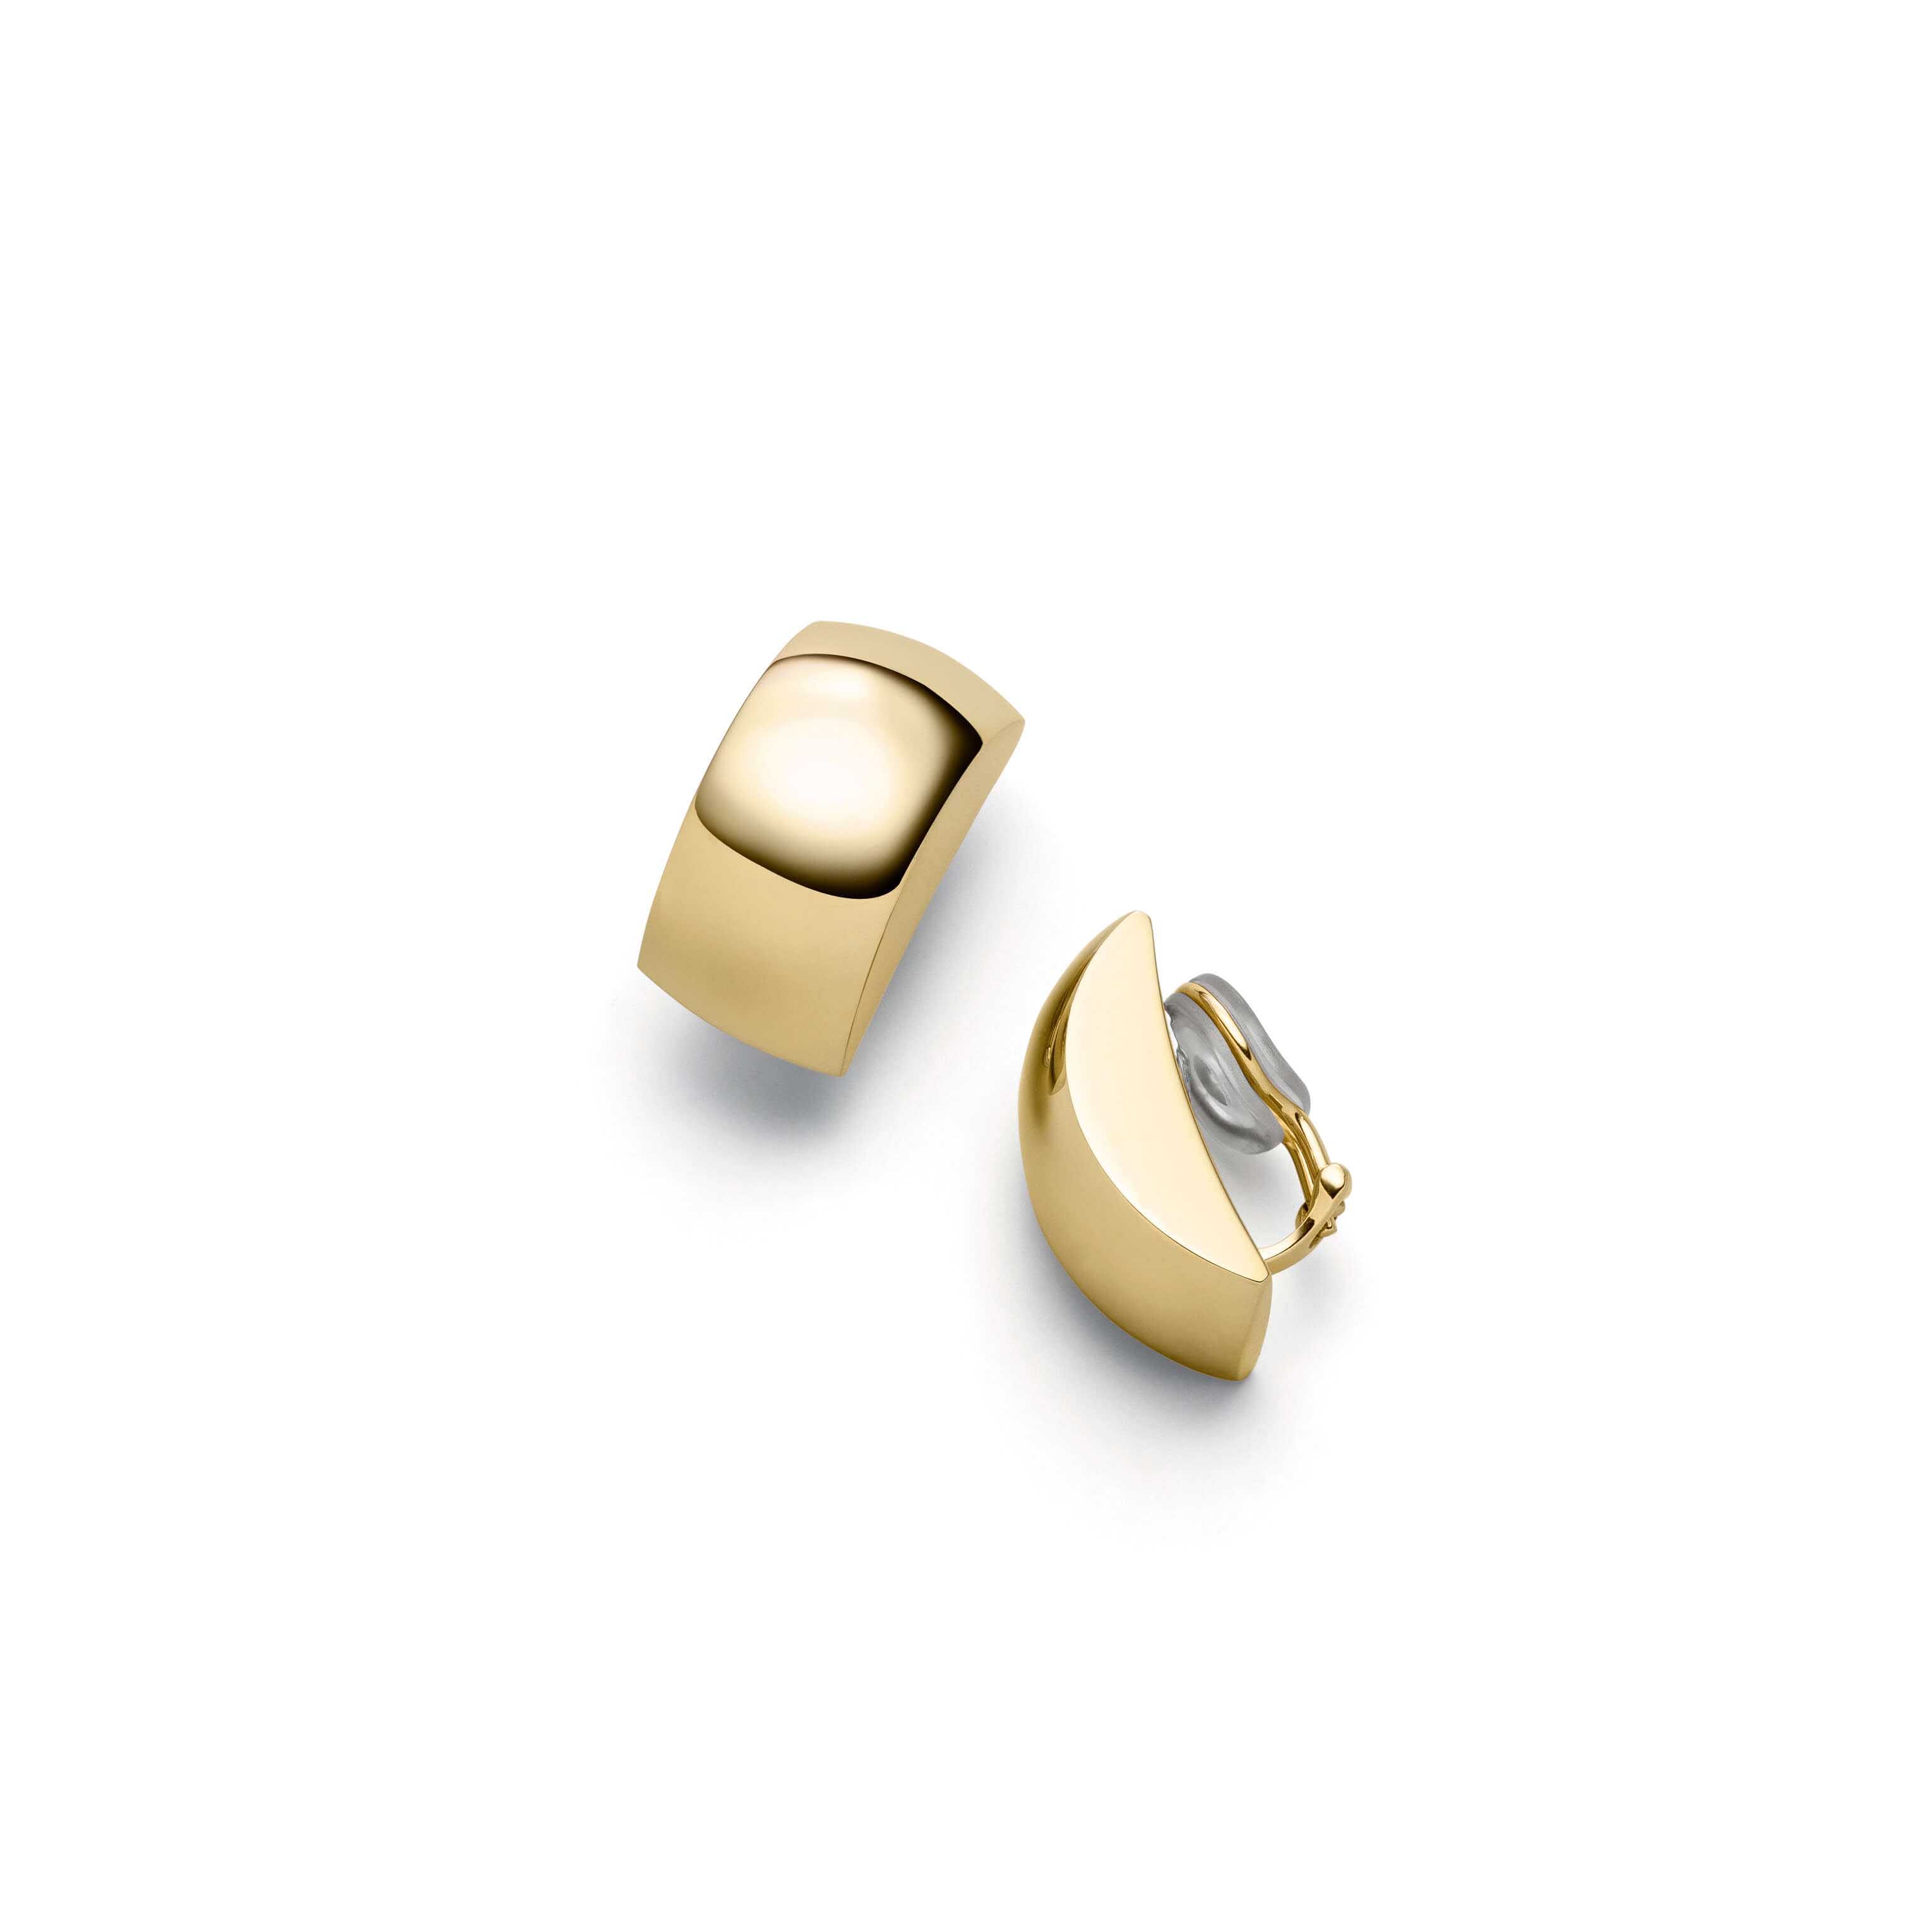 Los pendientes al por mayor al por mayor en el fabricante de la joyería del oro 18k personalizan su joyería del diseño OEM/ODM